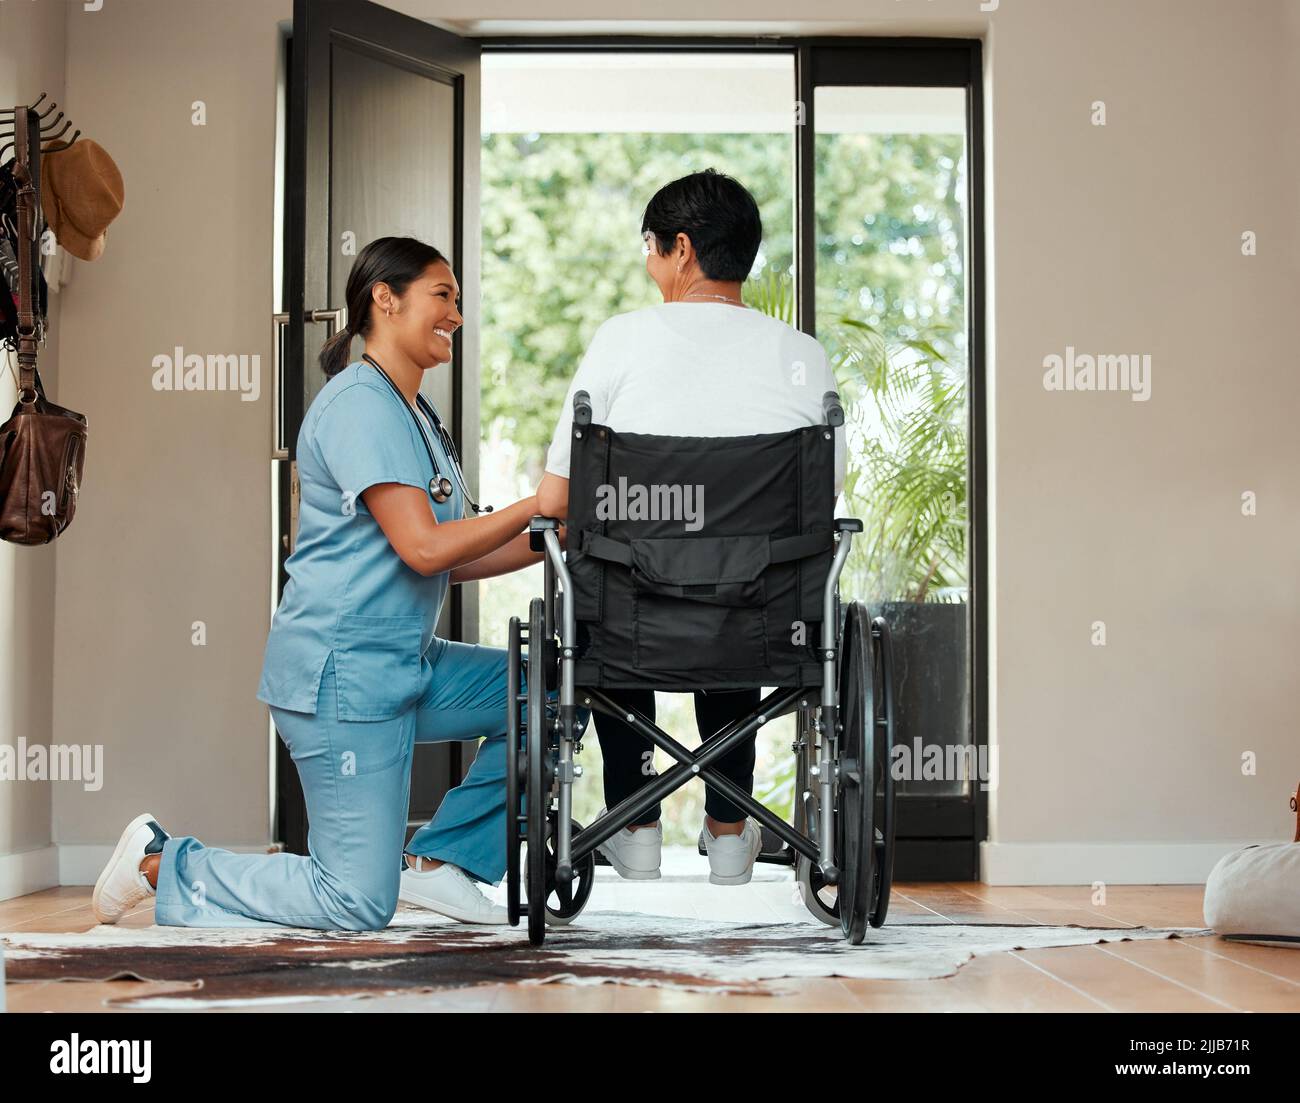 Verstehen Sie die Währung einer Hand voller Liebe. Eine junge Krankenschwester, die sich im Rollstuhl um eine ältere Frau kümmert. Stockfoto